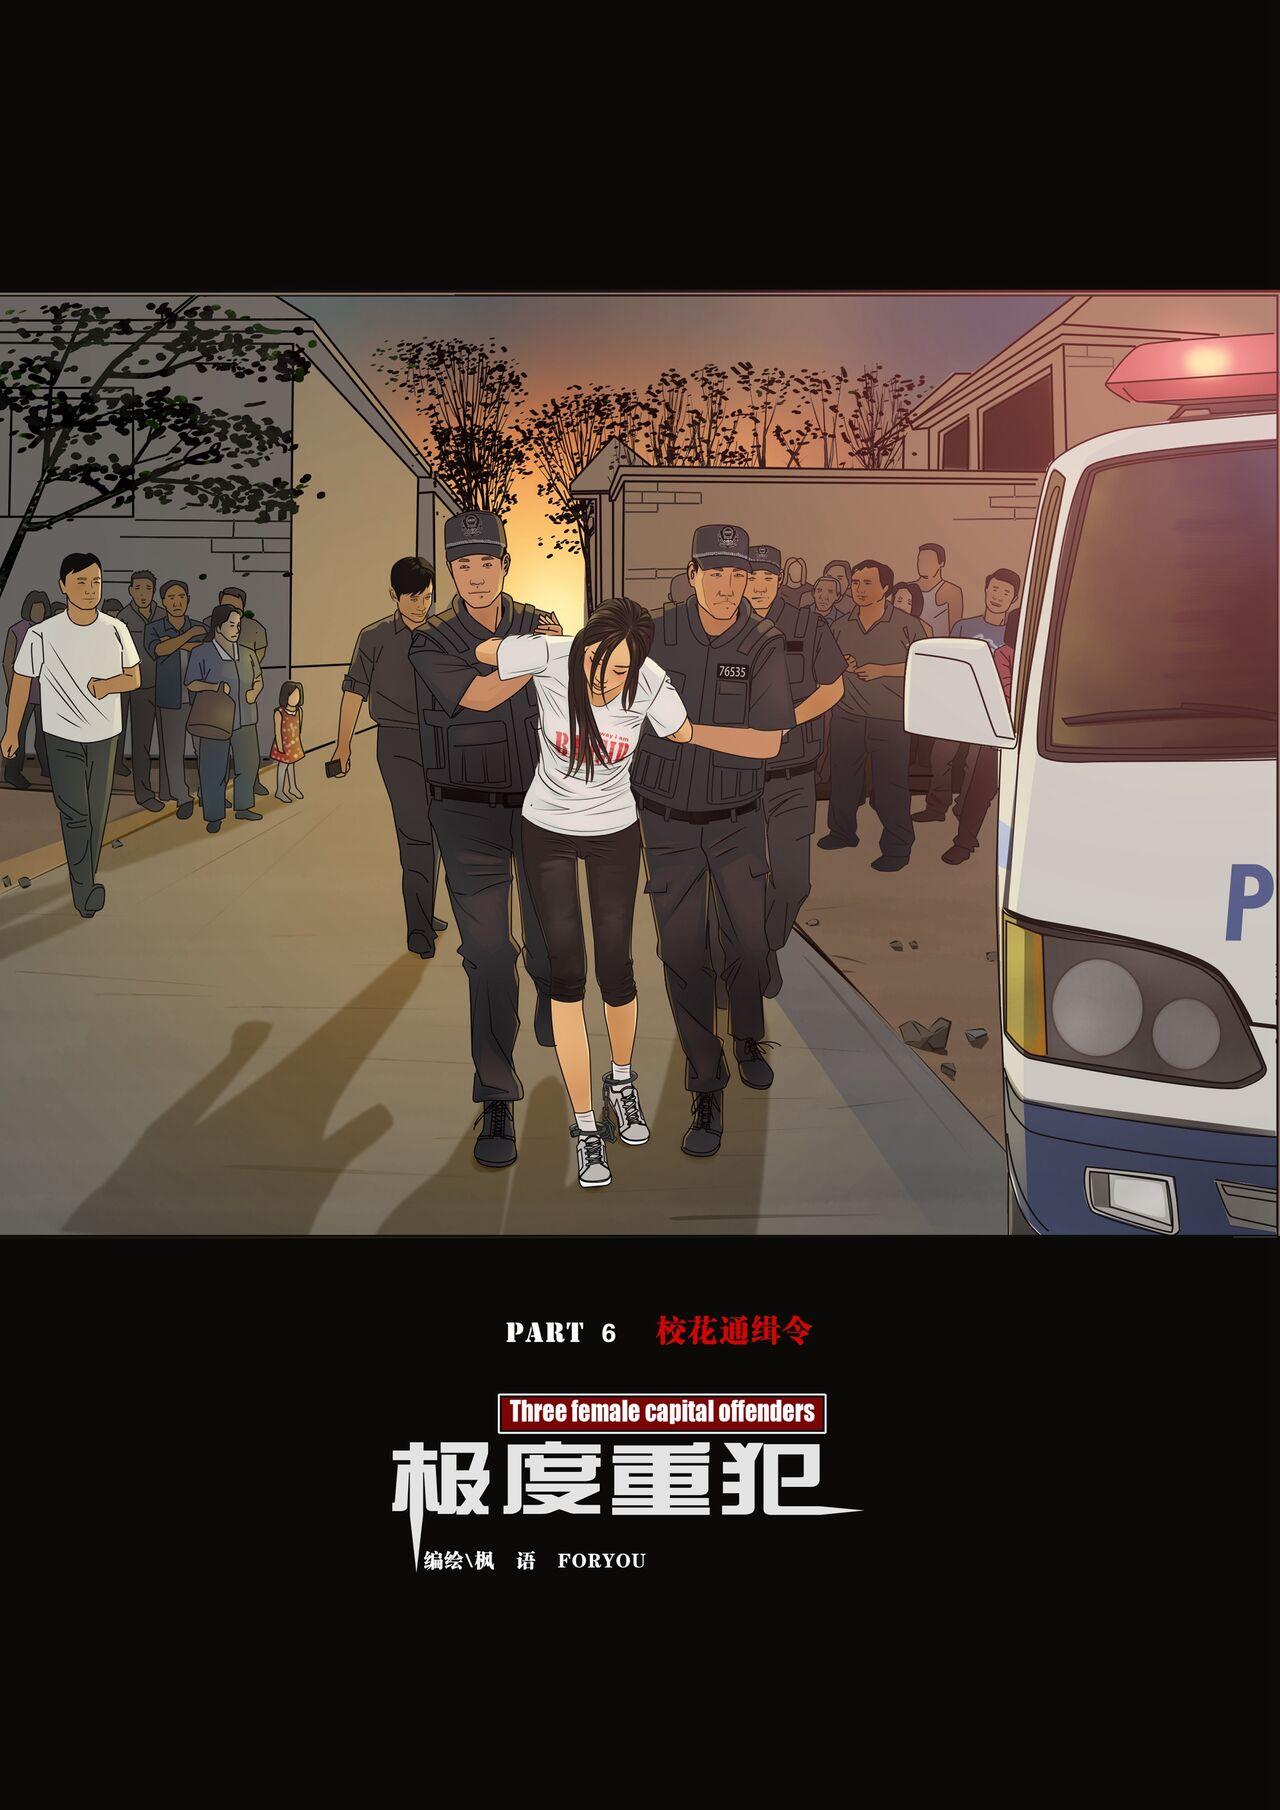 Behind 枫语漫画 Foryou 《极度重犯》第六话 Three Female Prisoners 6 Chinese Hot Girl - Page 18